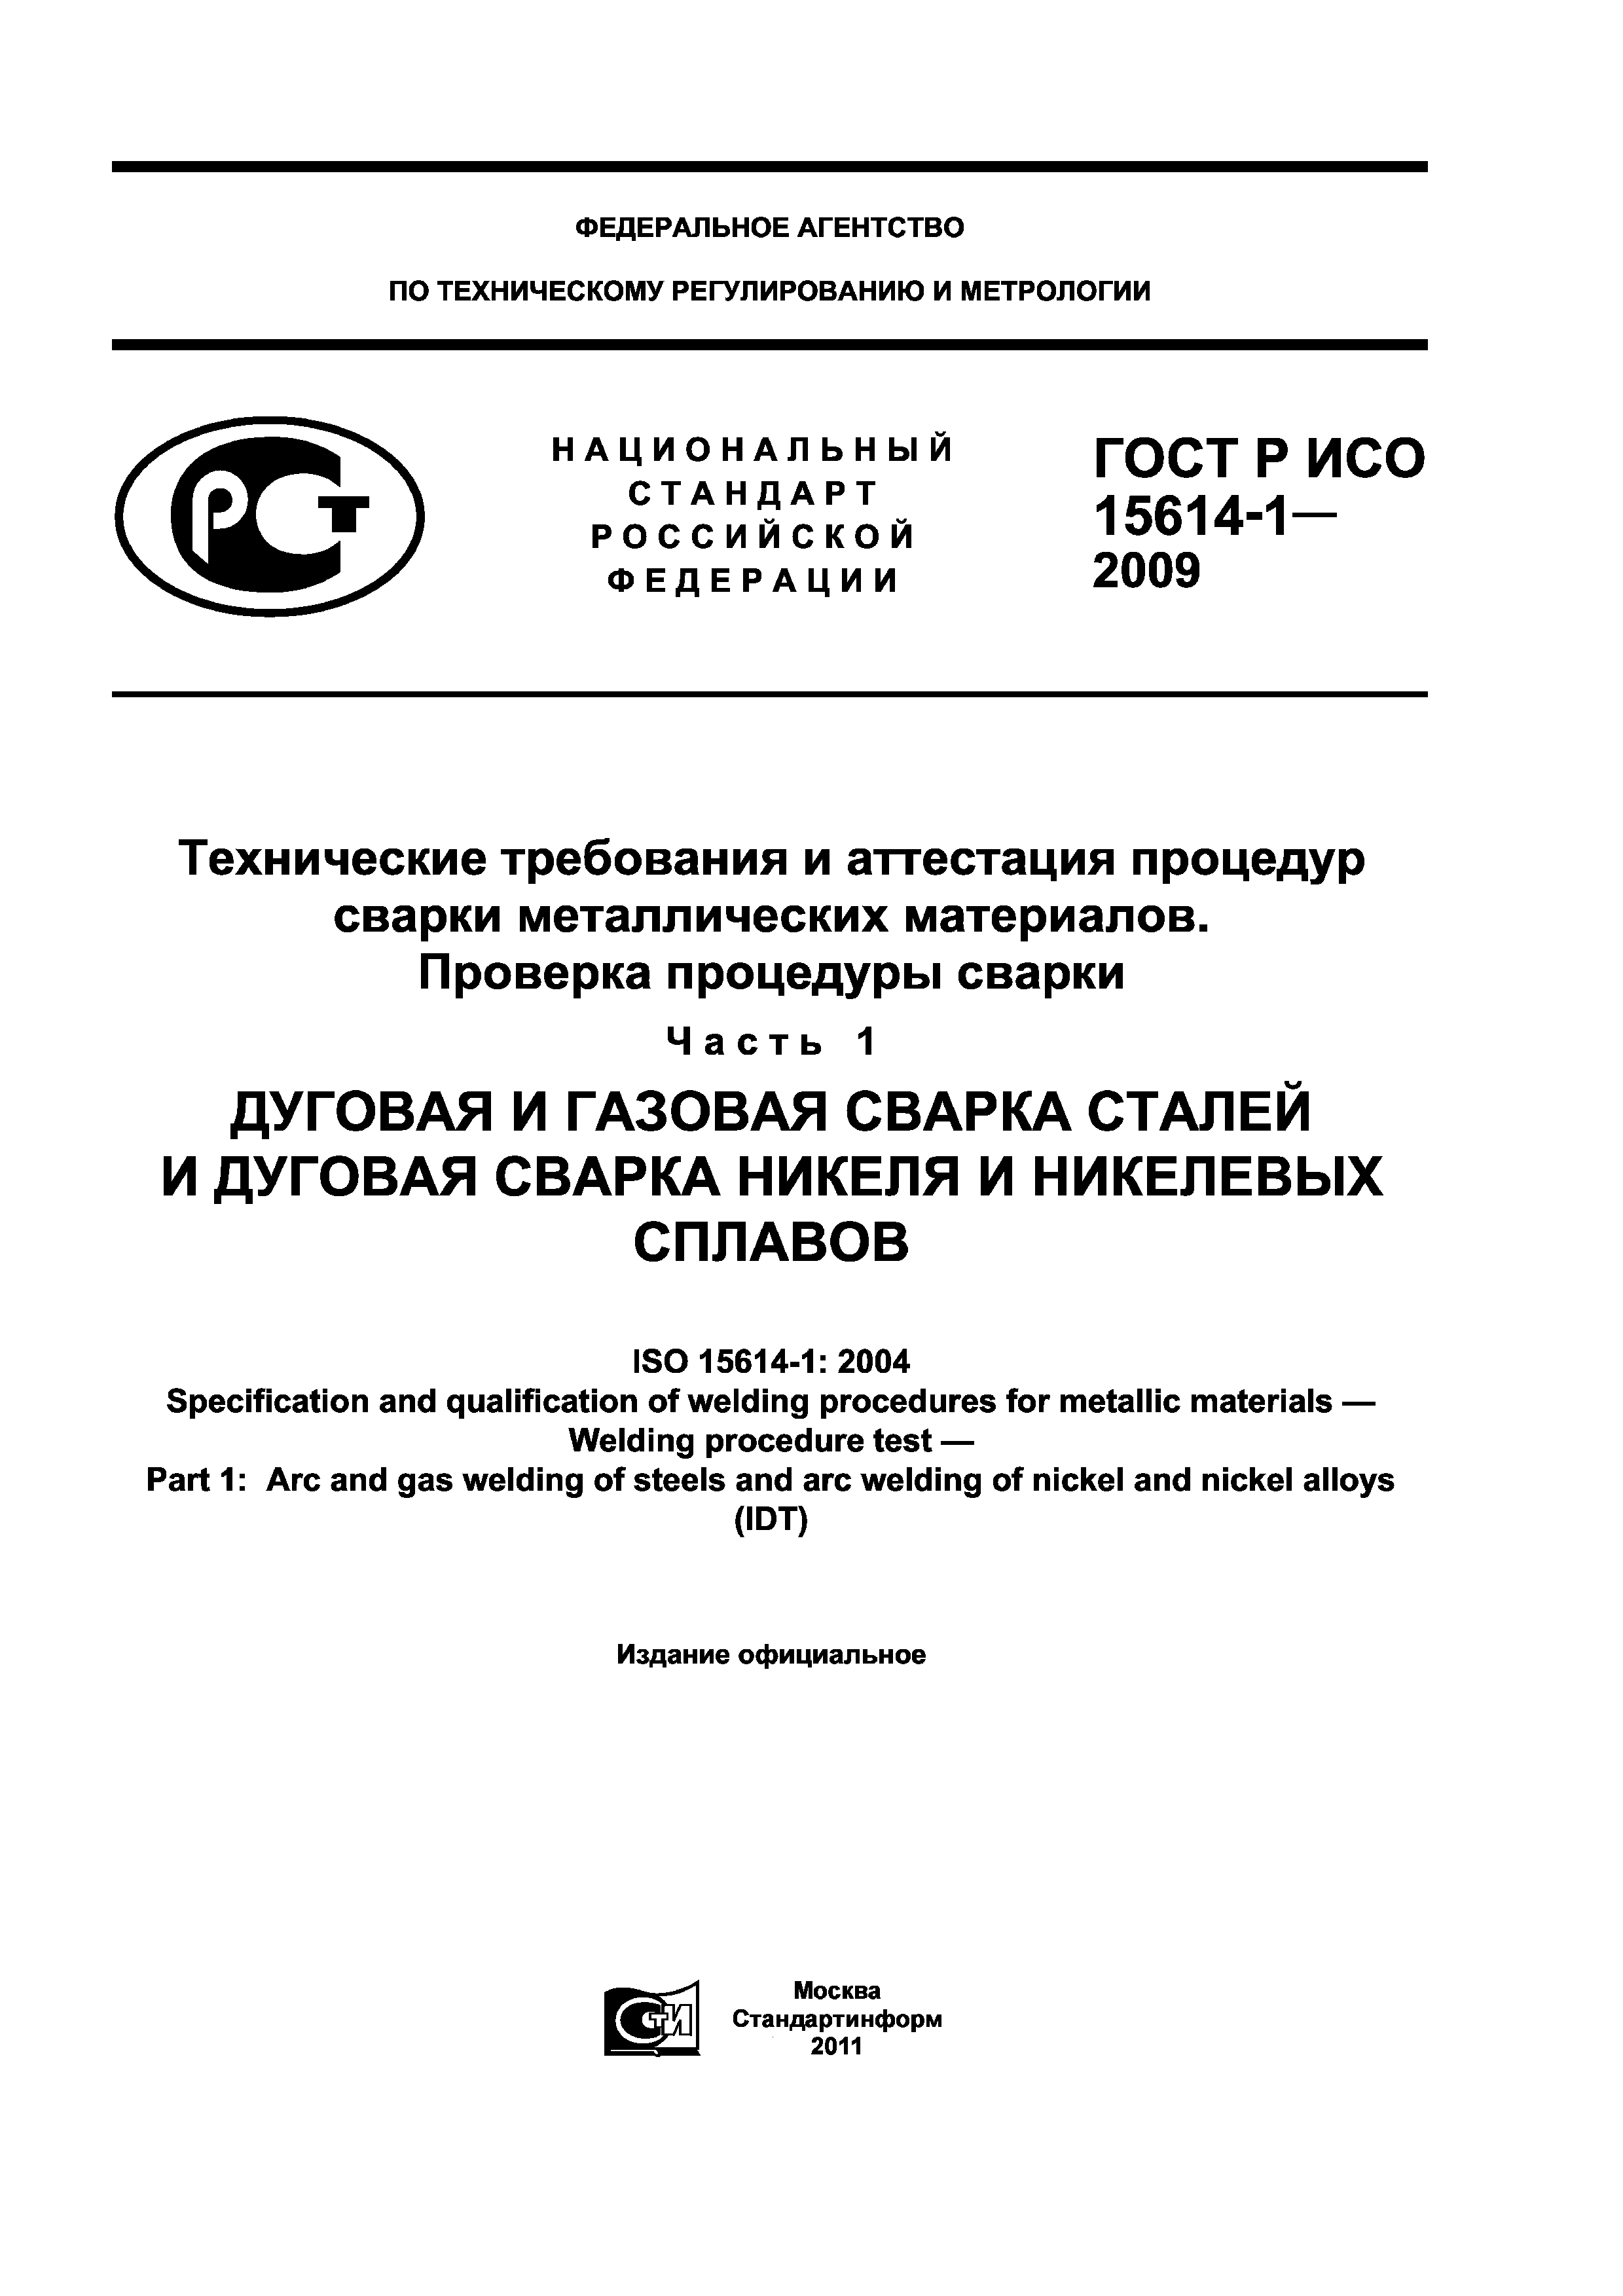 ГОСТ Р ИСО 15614-1-2009